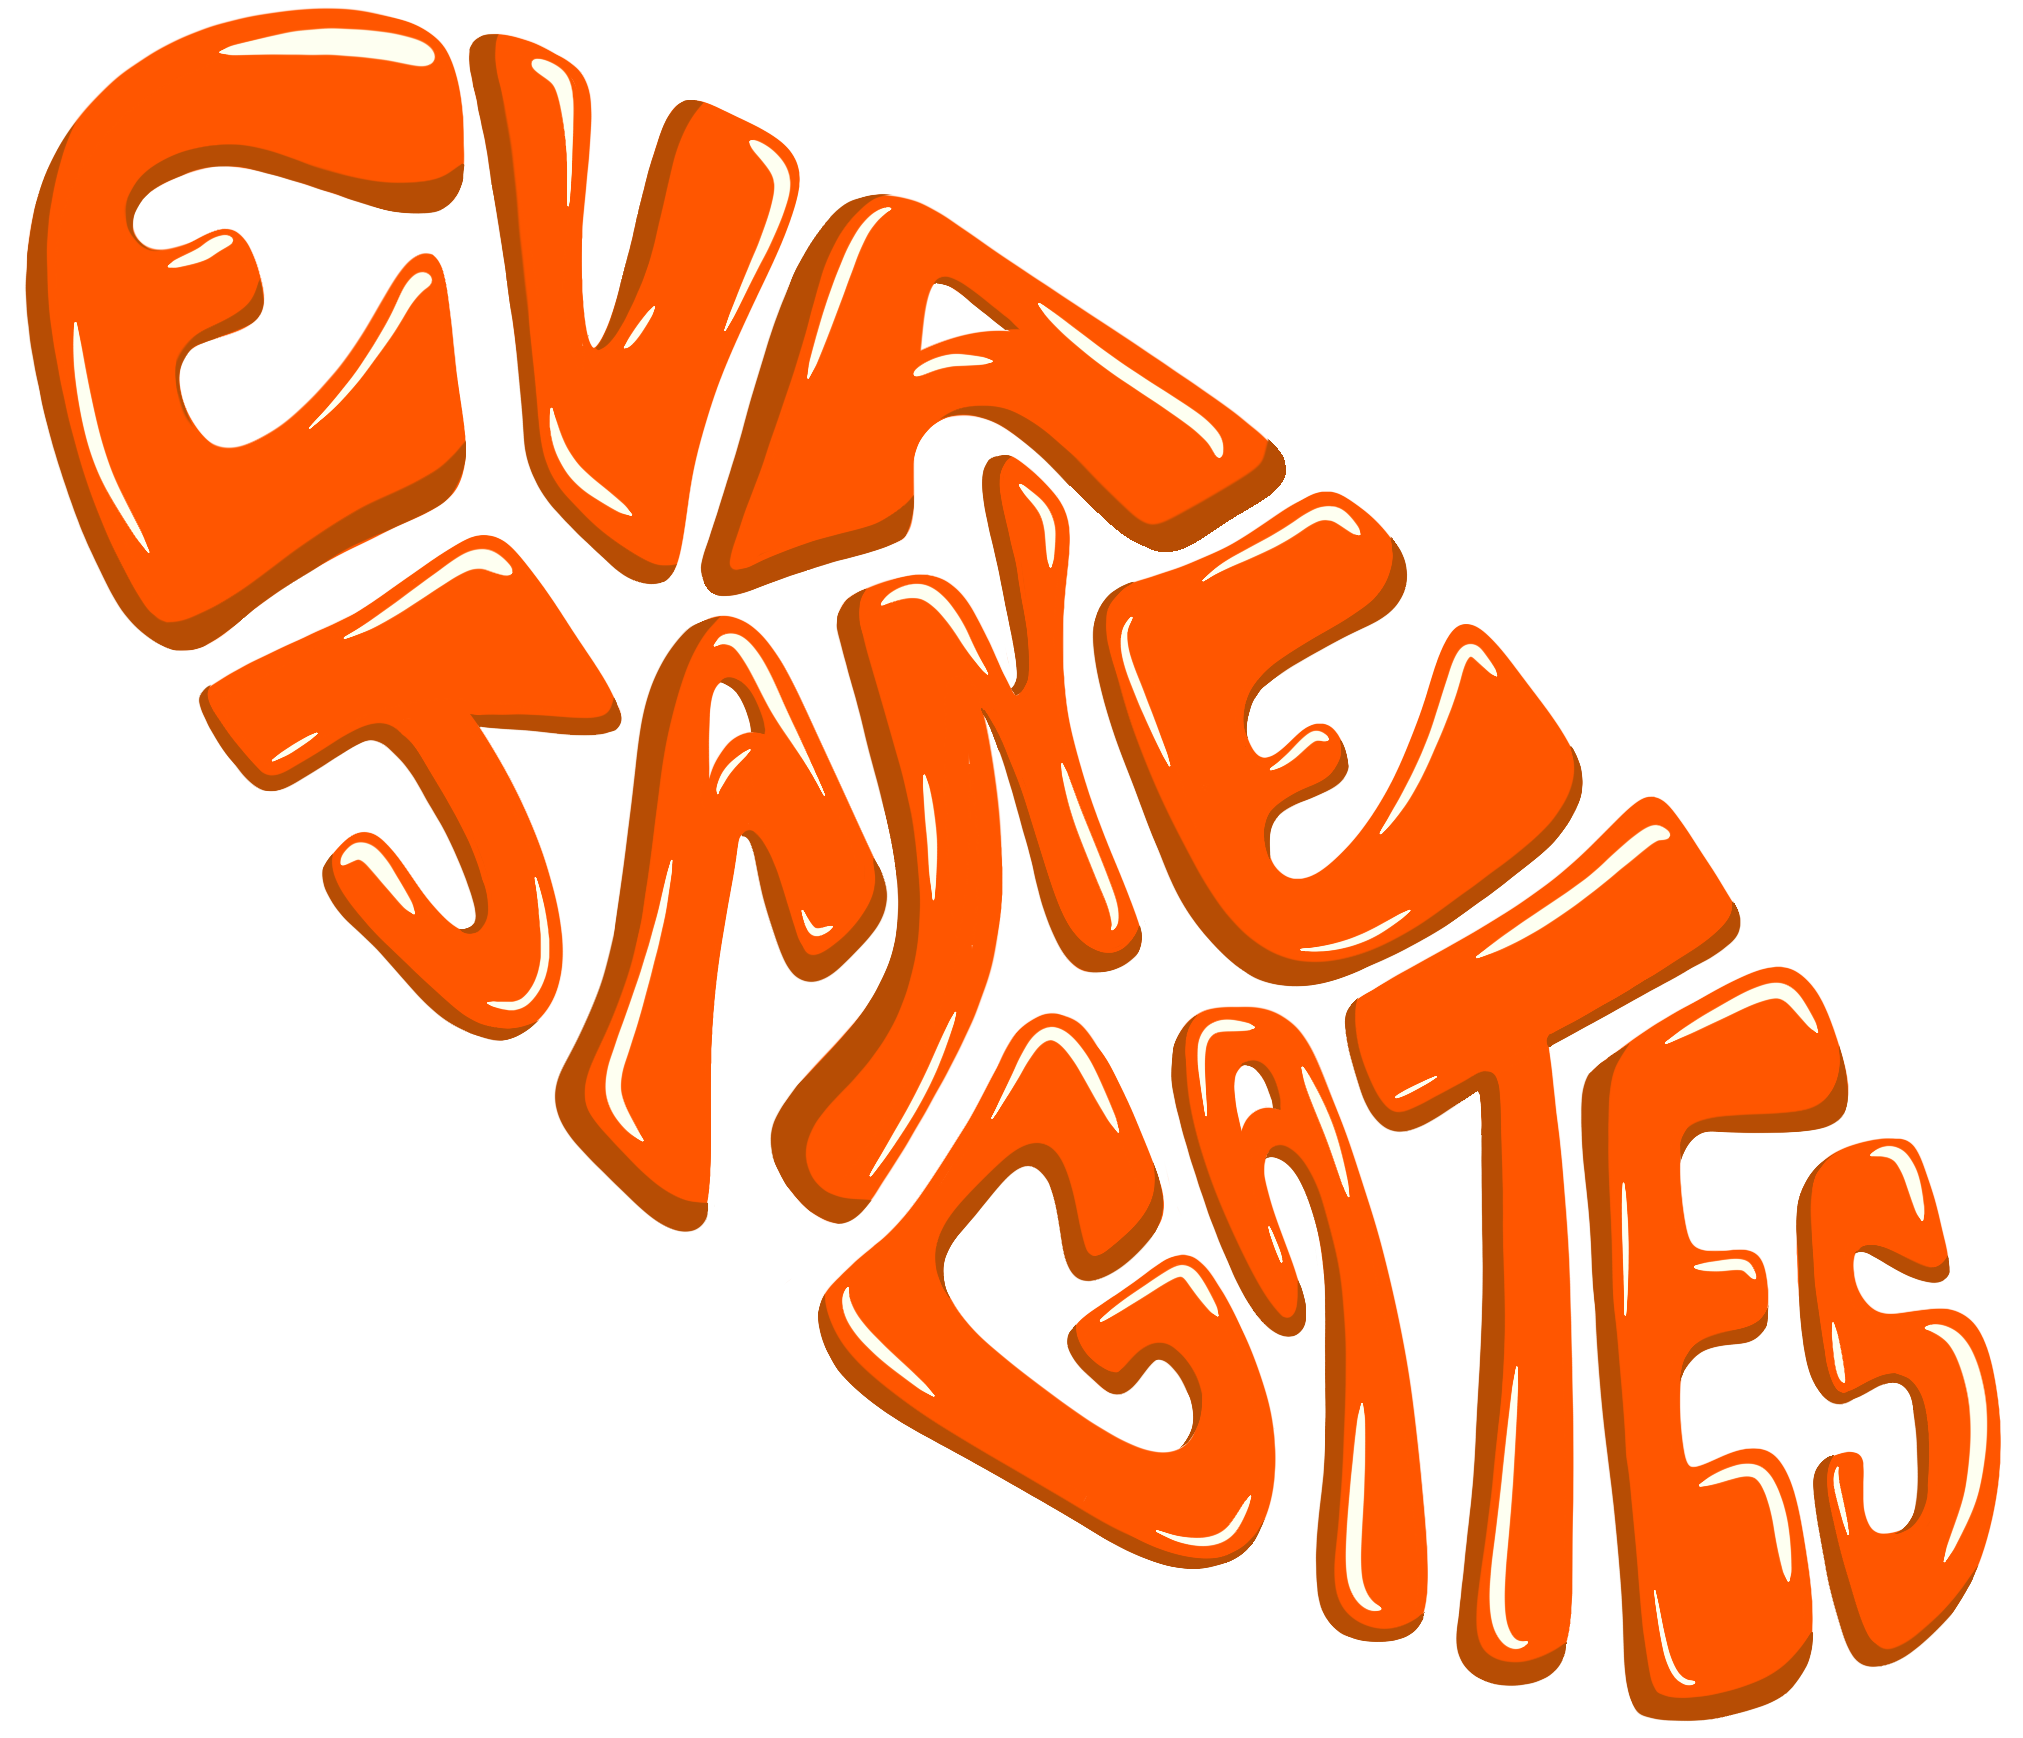 Eva Jane Gates